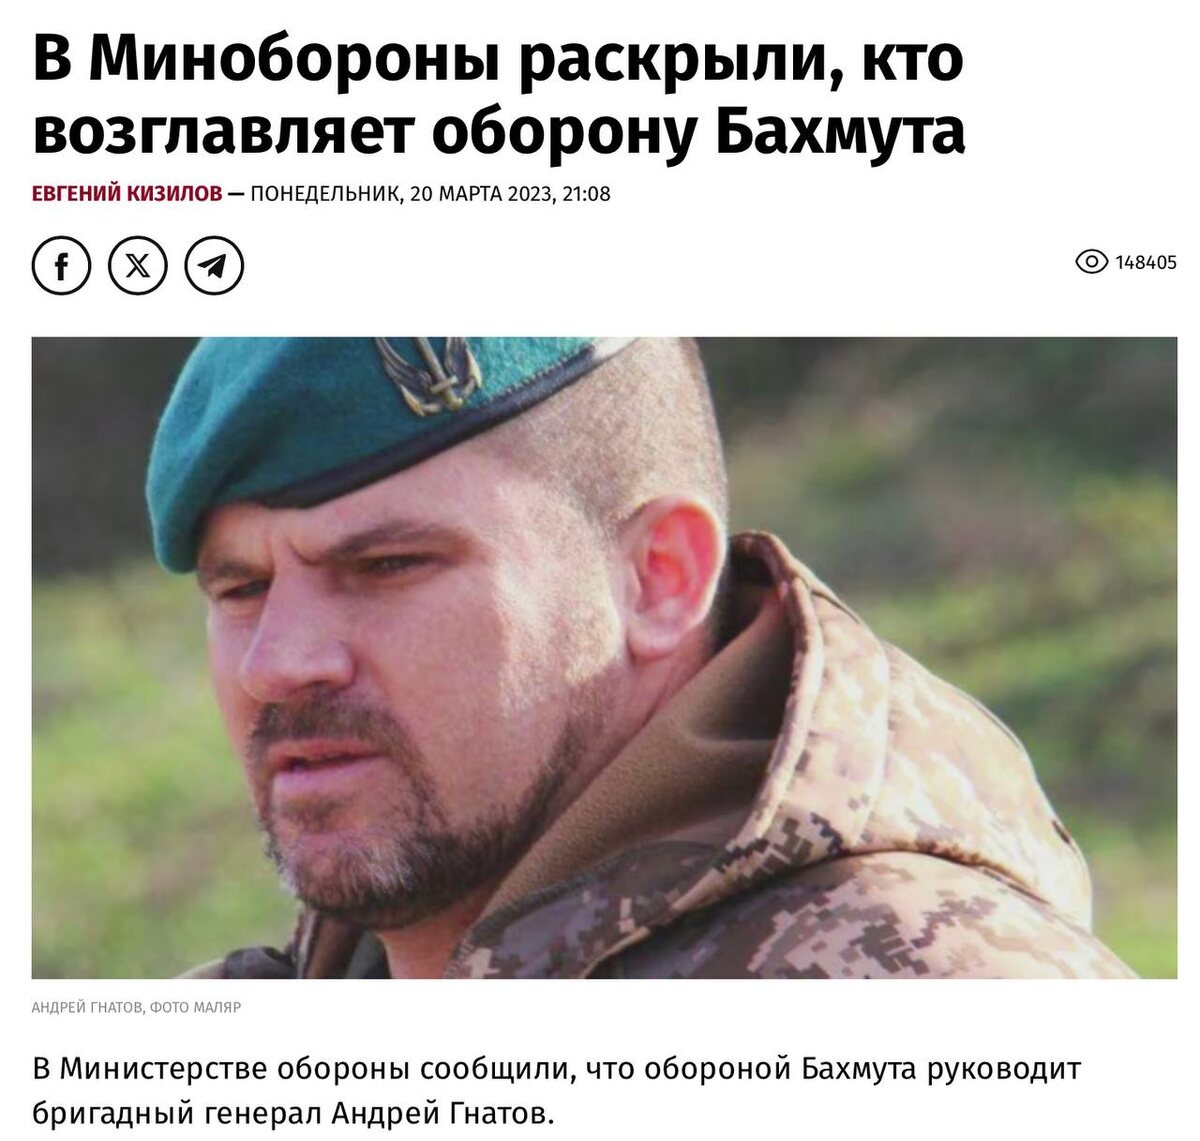    Фото: скриншот статьи украинского издания "Украинская правда"